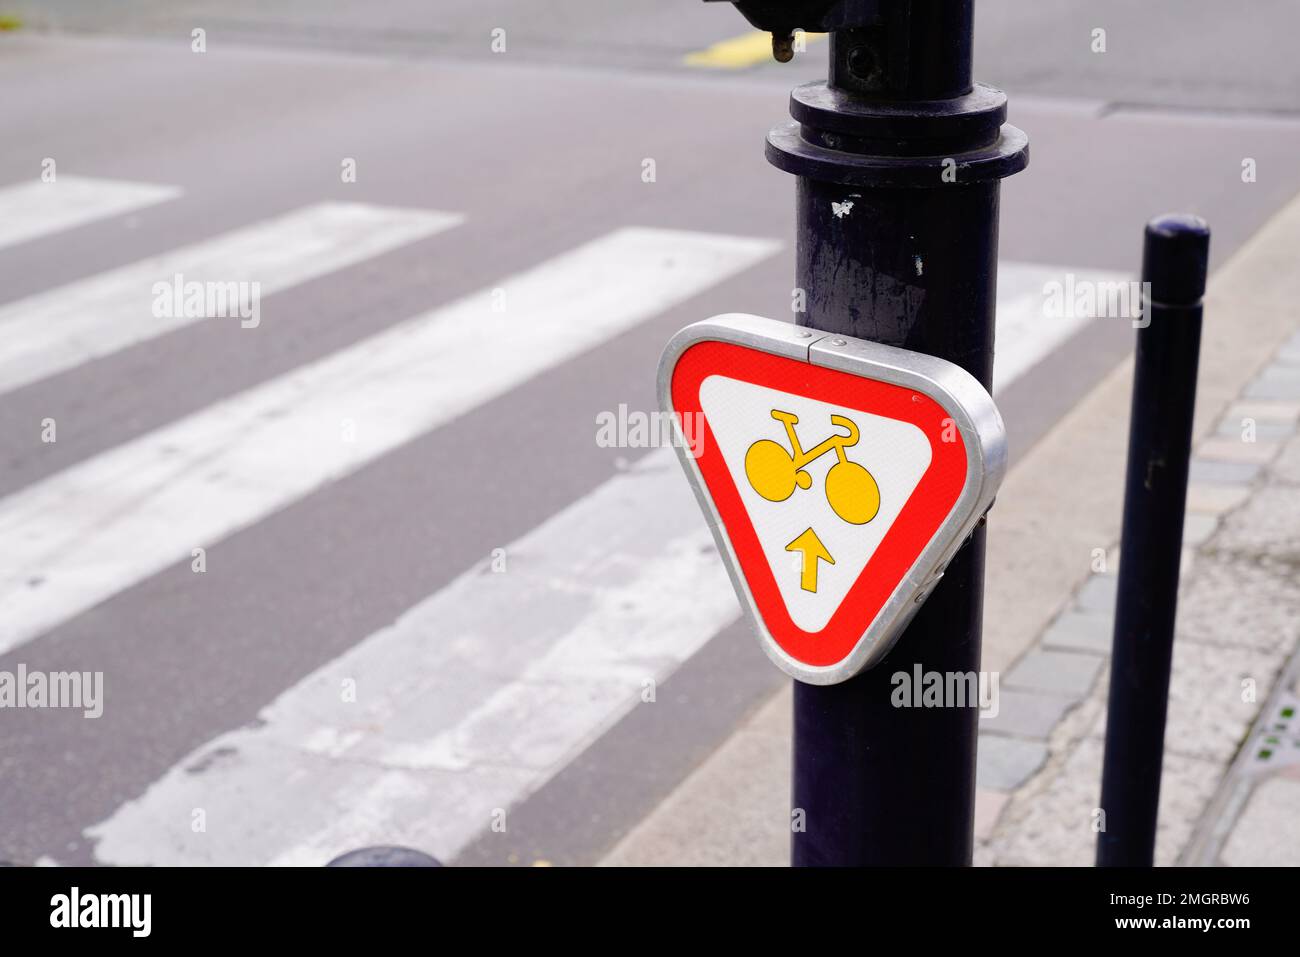 Radfahrer im Stadtverkehr, Schild mit Autorisierung, um geradeaus auf eine Kreuzung zu fahren Stockfoto